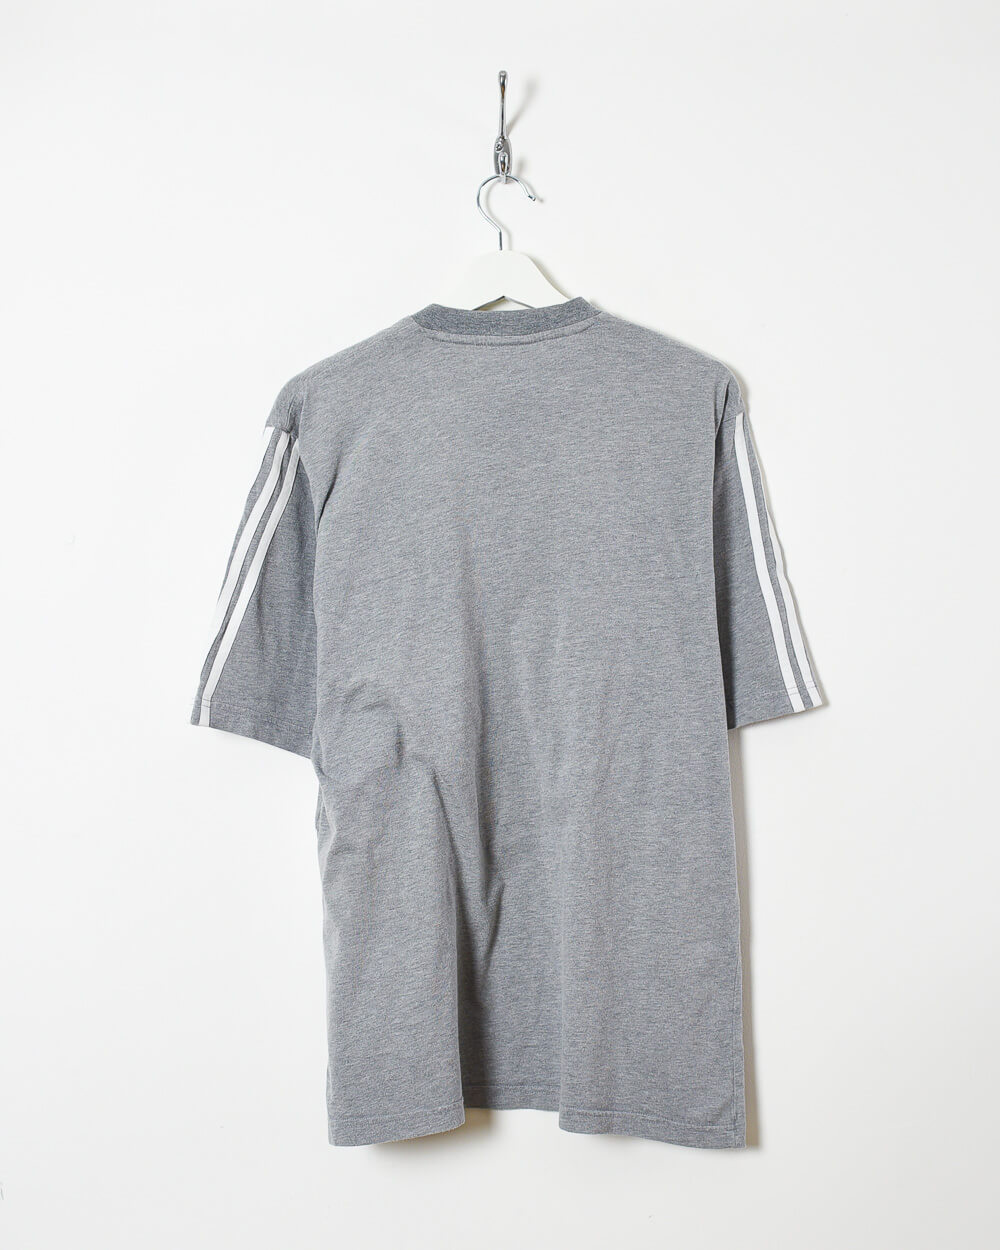 Stone Adidas T-Shirt - Large